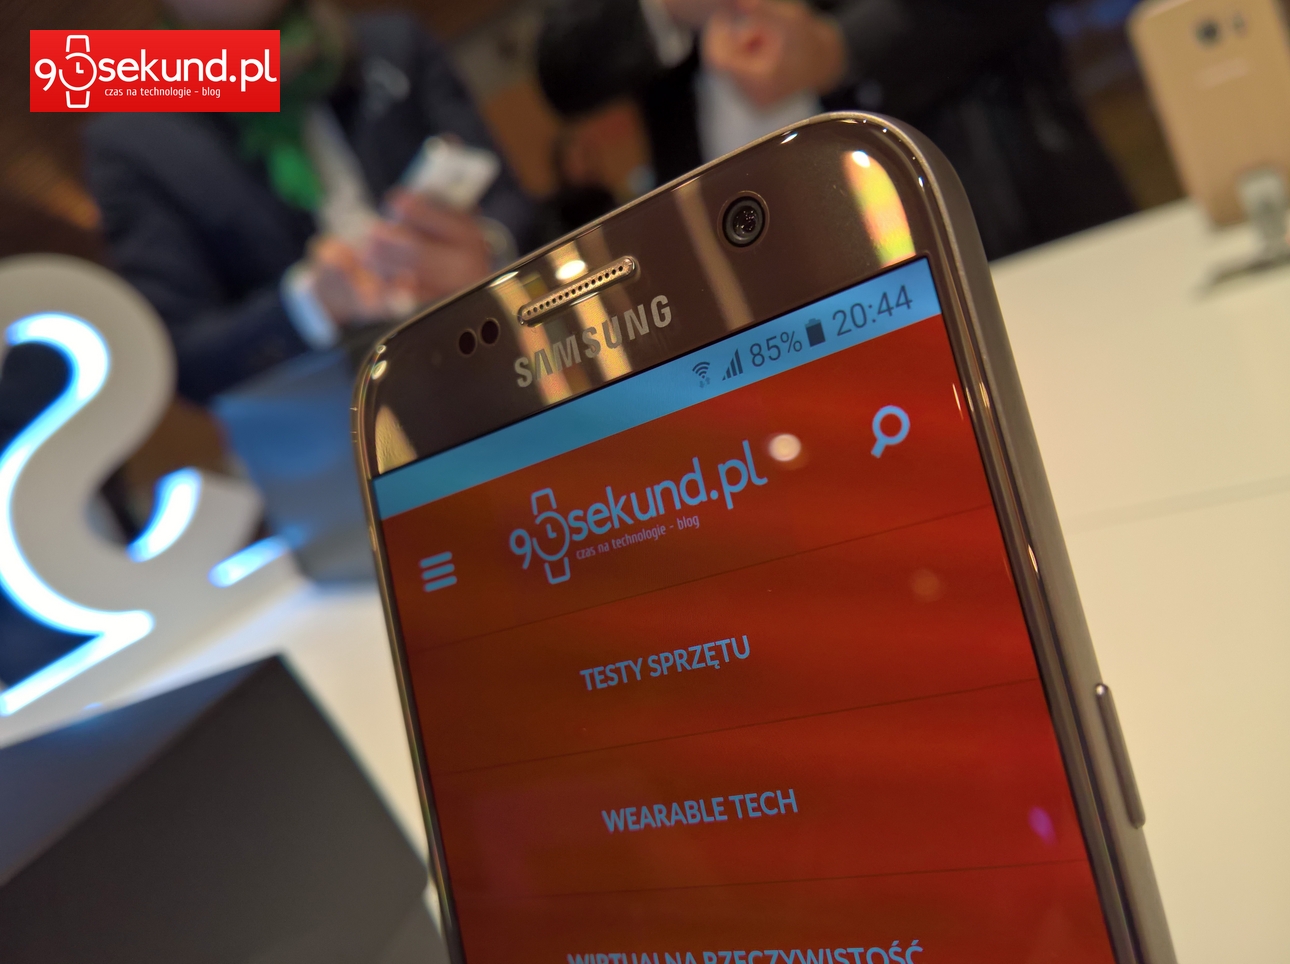 Samsung Galaxy S7 - 90sekund.pl